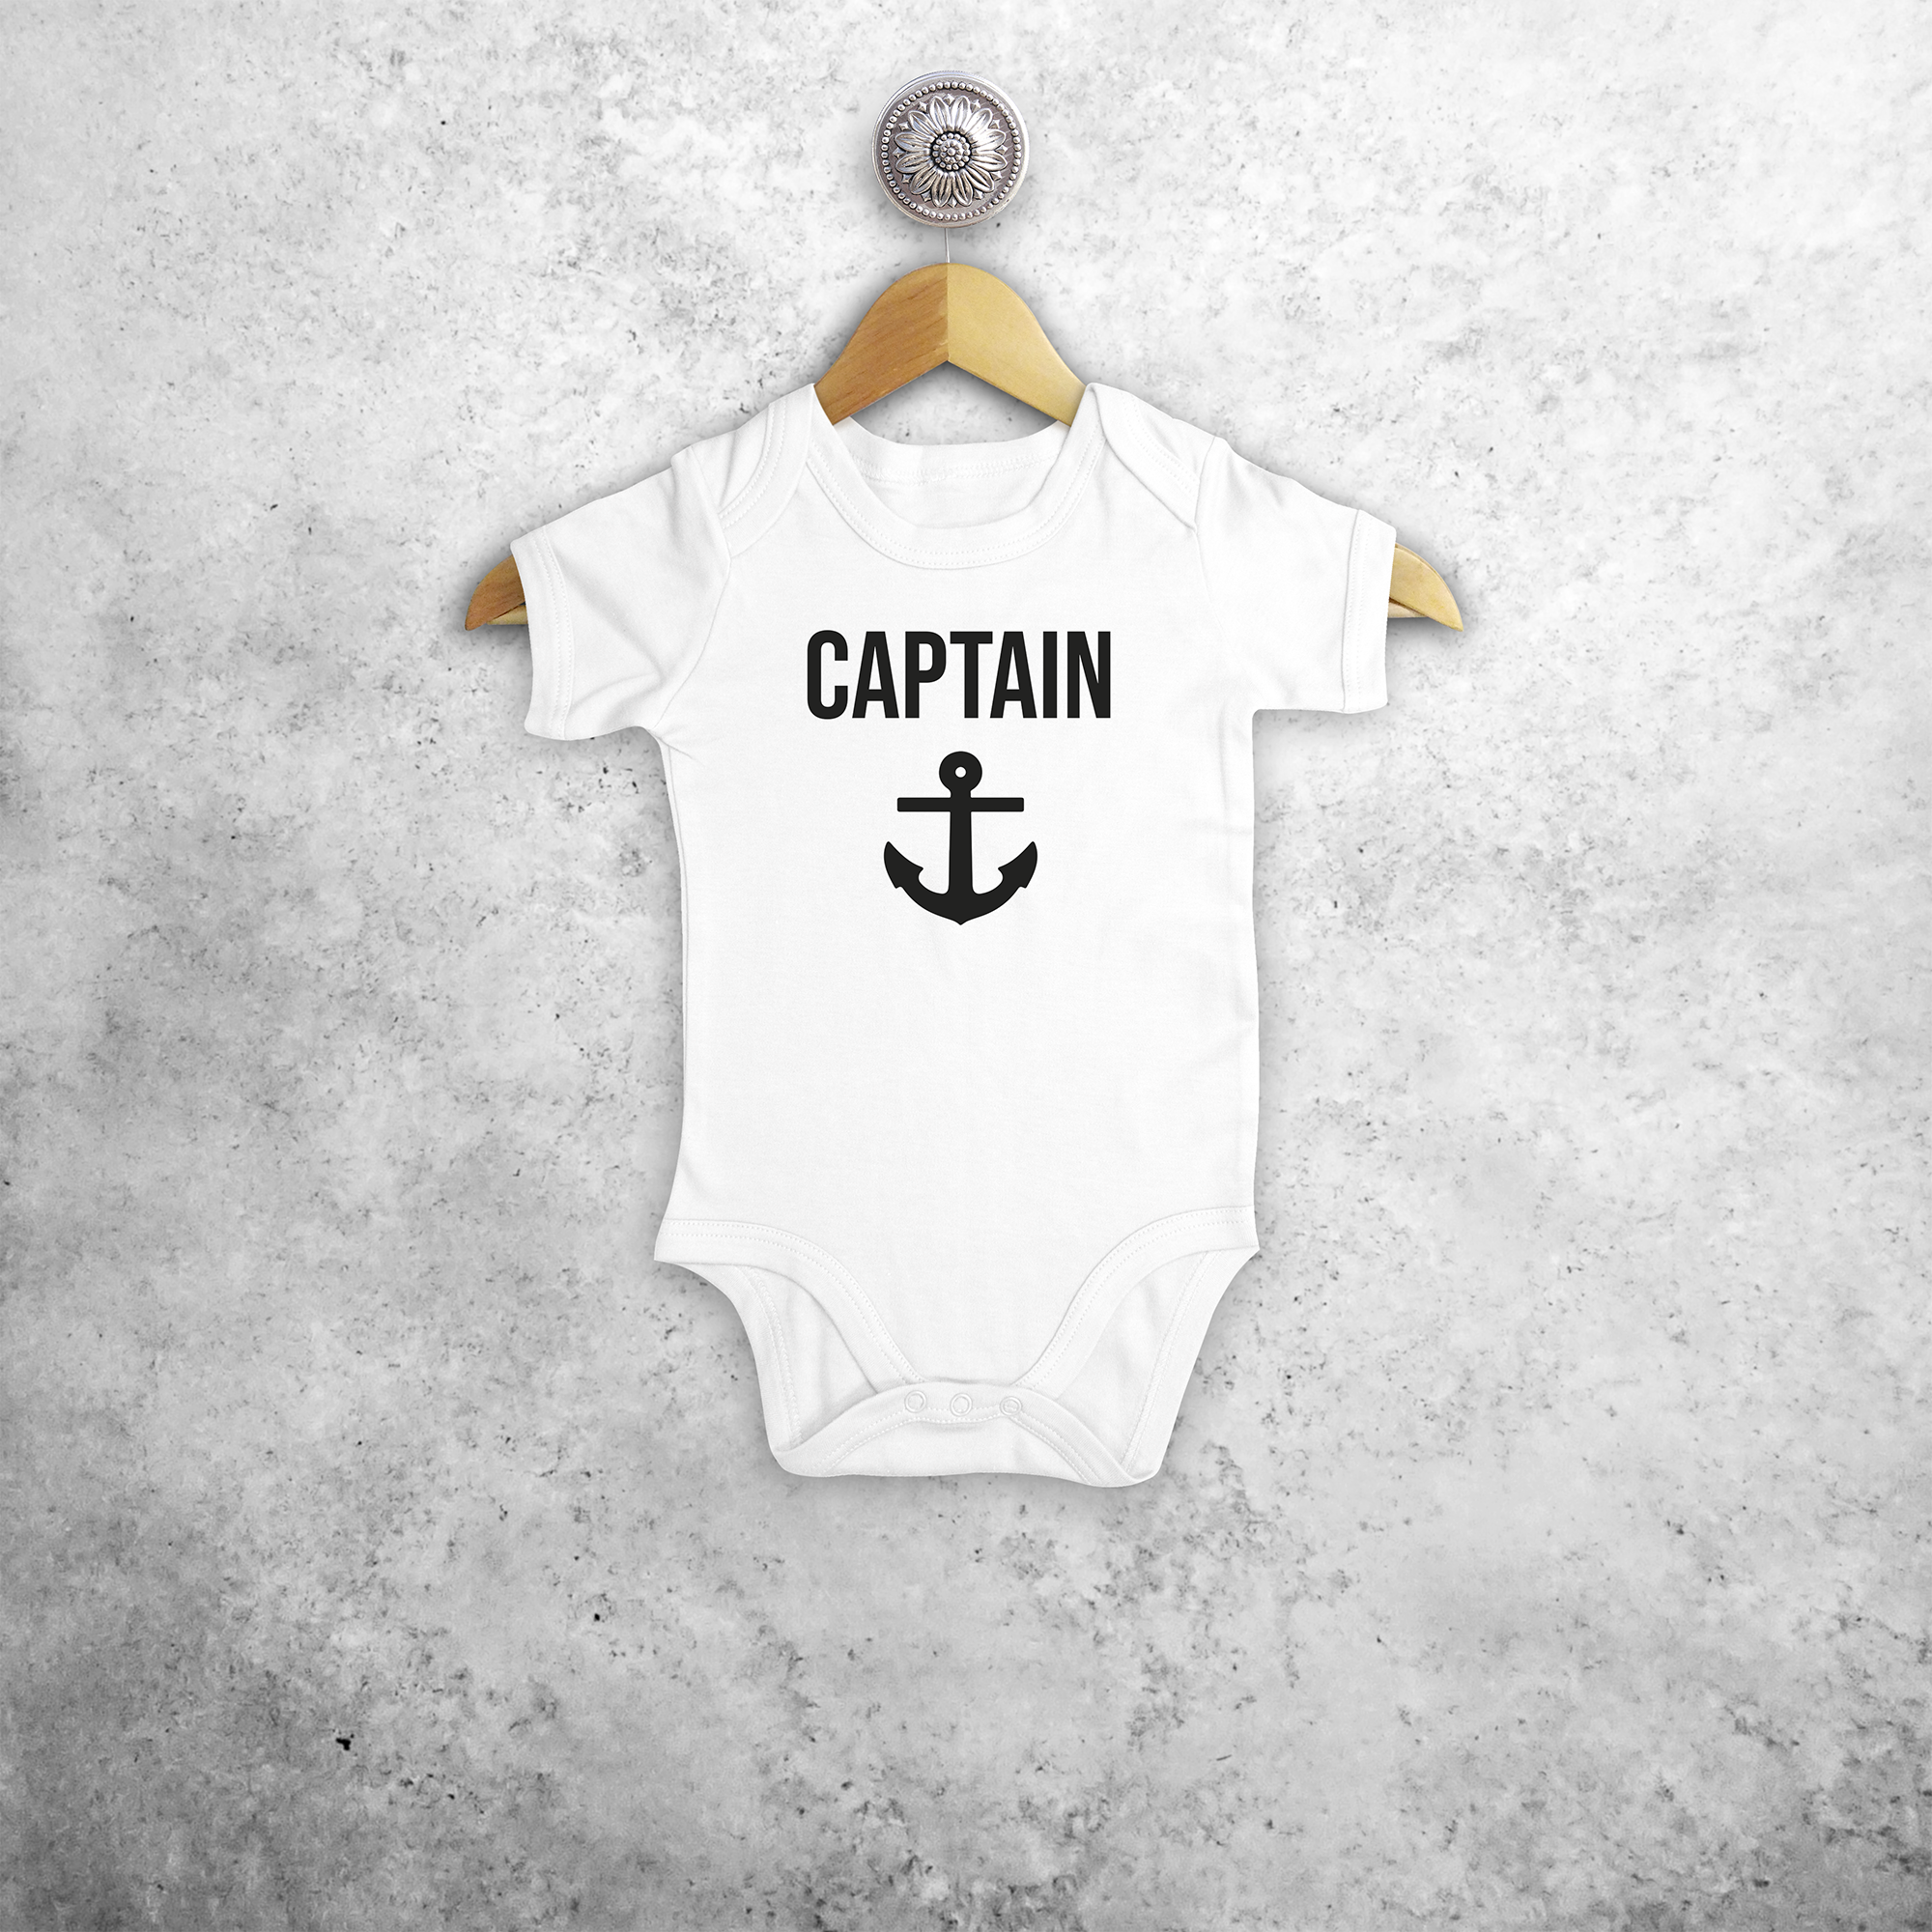 'Captain' baby shortsleeve bodysuit